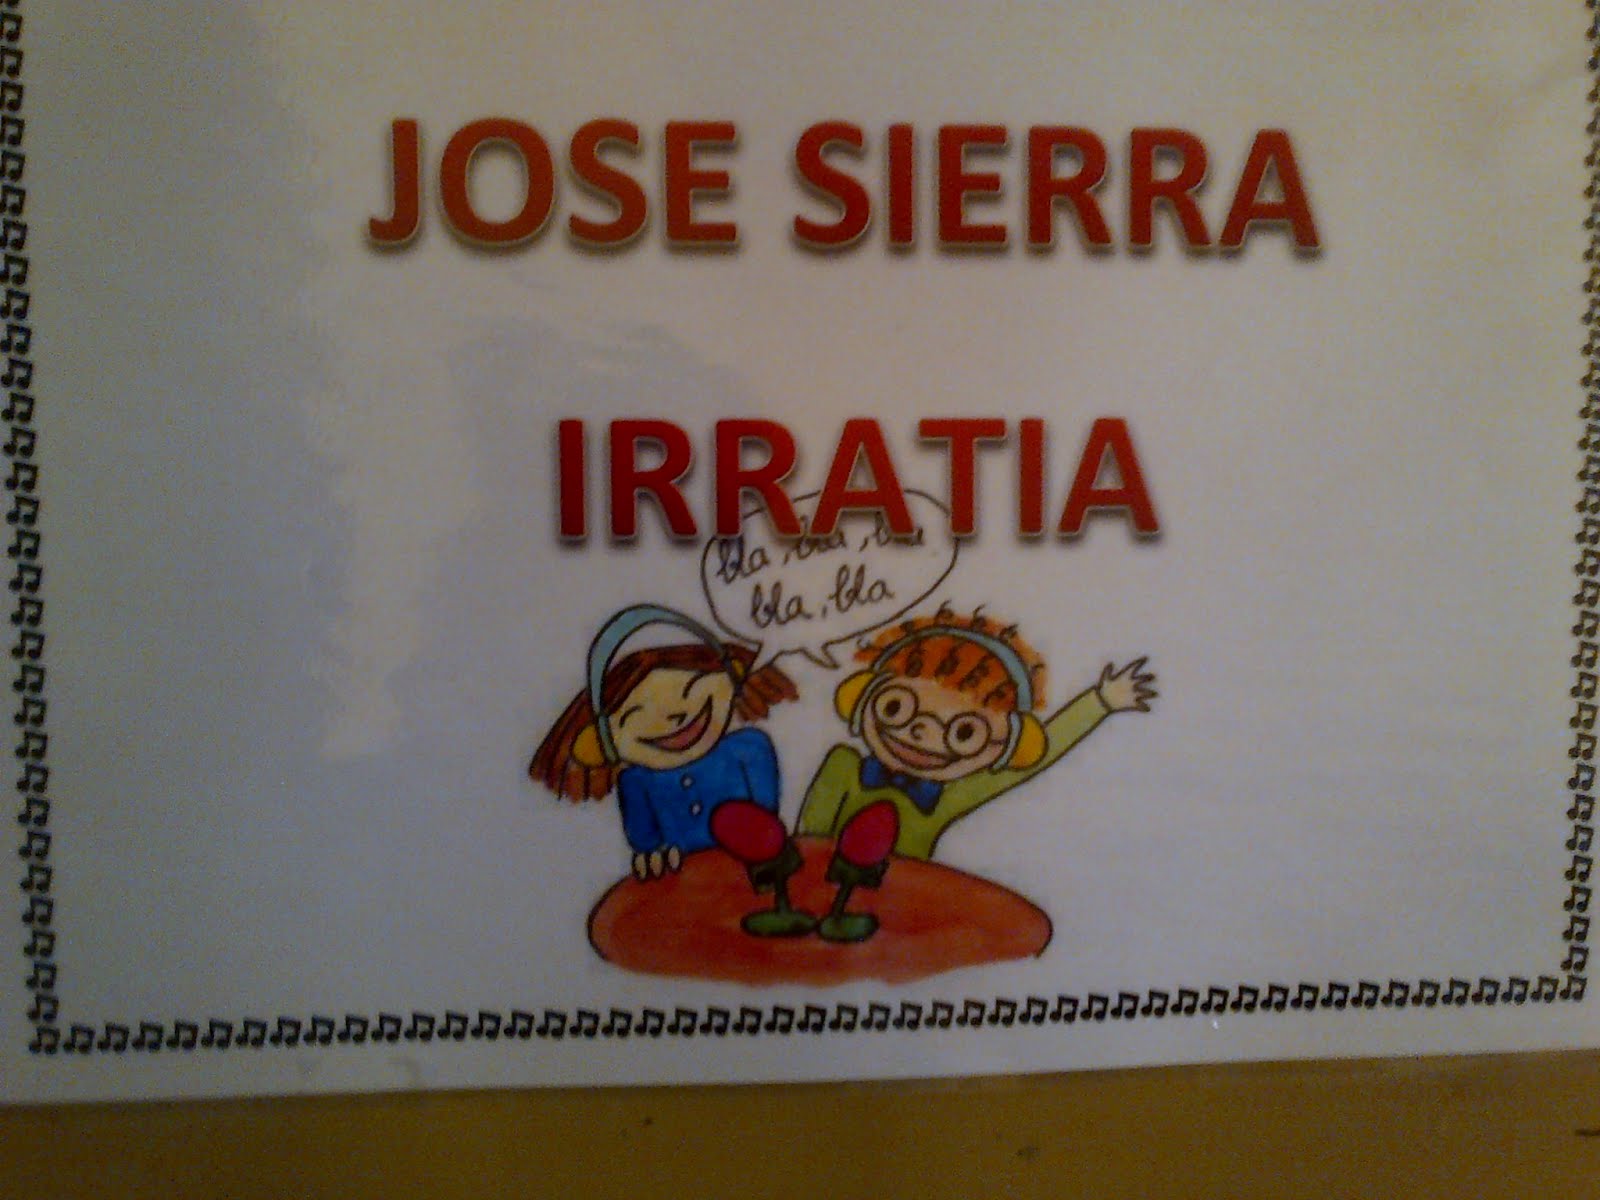 Jose Sierra Irratia